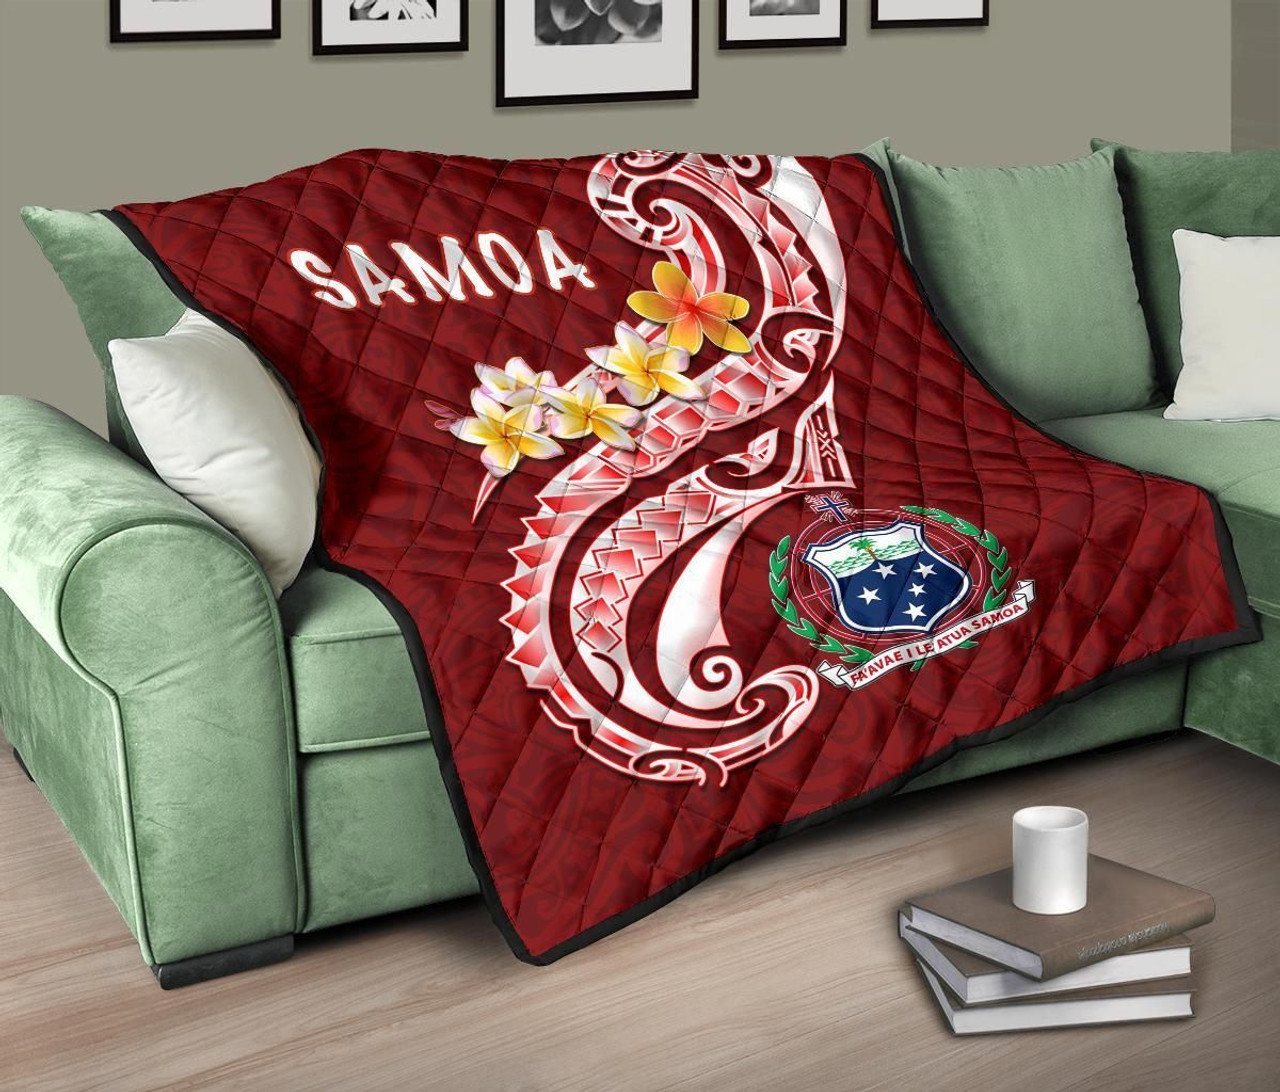 Samoa Premium Quilt - Samoa Seal  Polynesian Patterns Plumeria 10